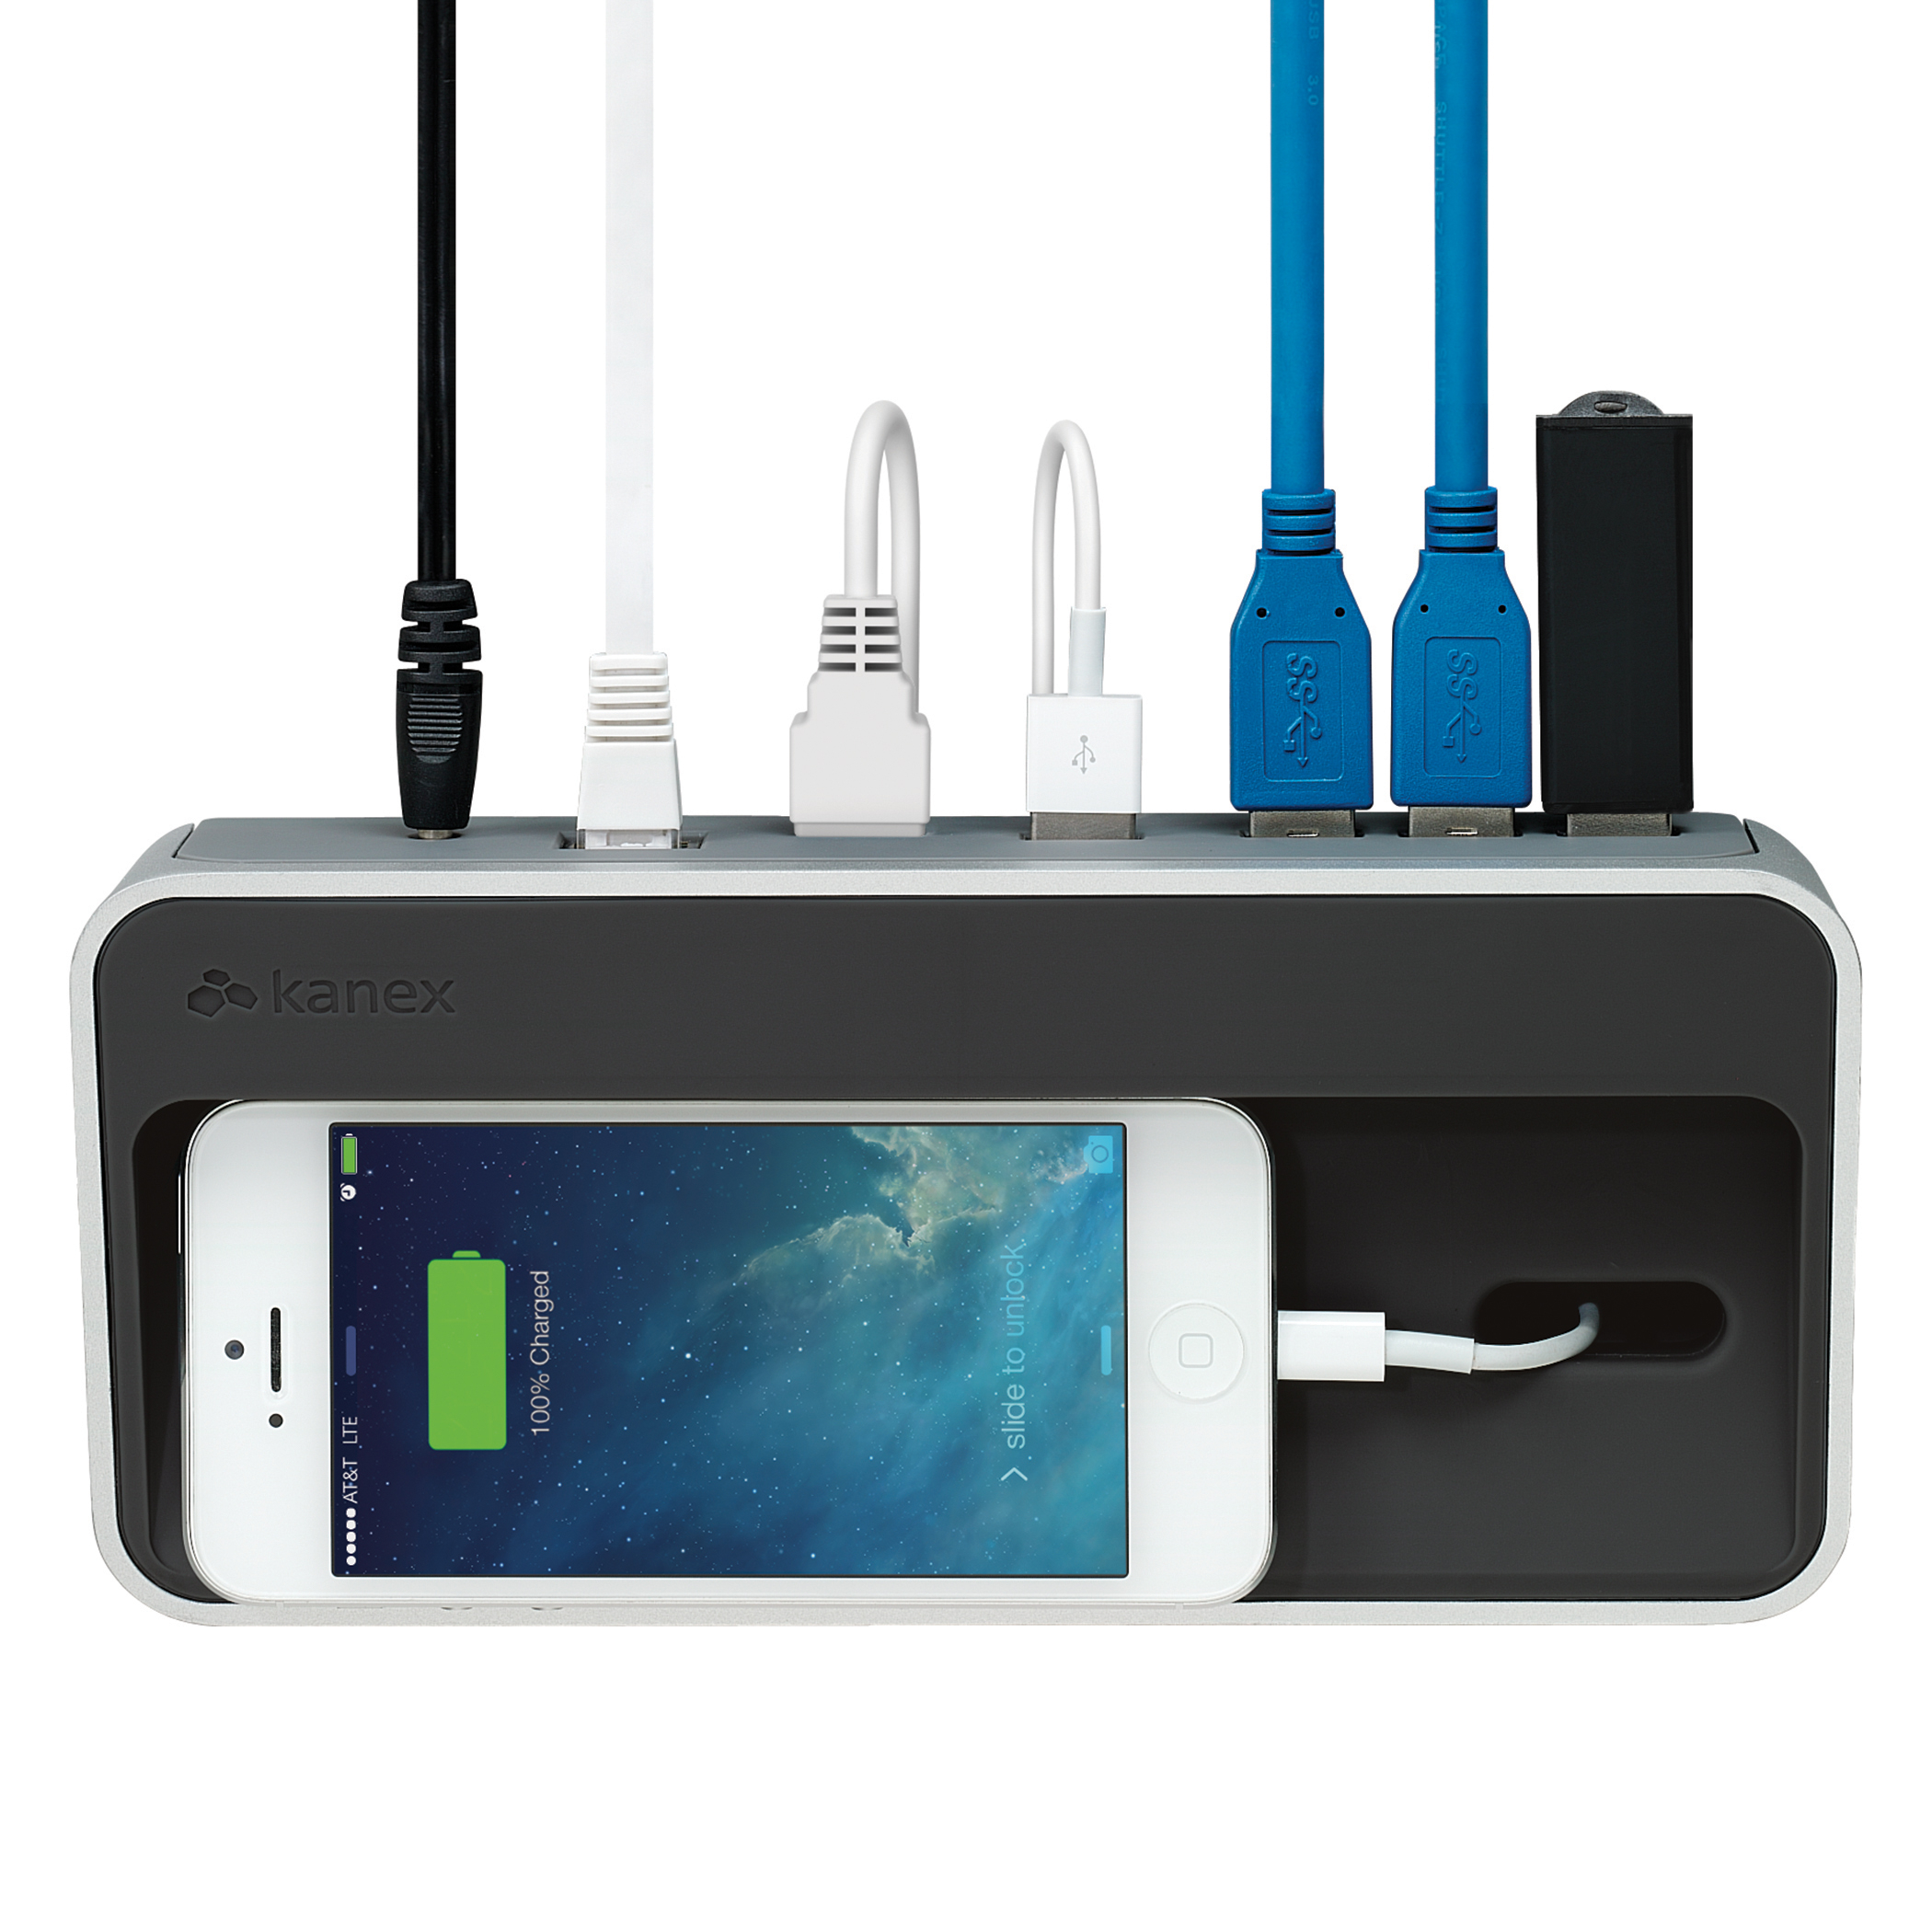 Kanex simpleDock - док станция за MacBook, Mac Mini & iMac и захранване за iPhone, iPad и iPod